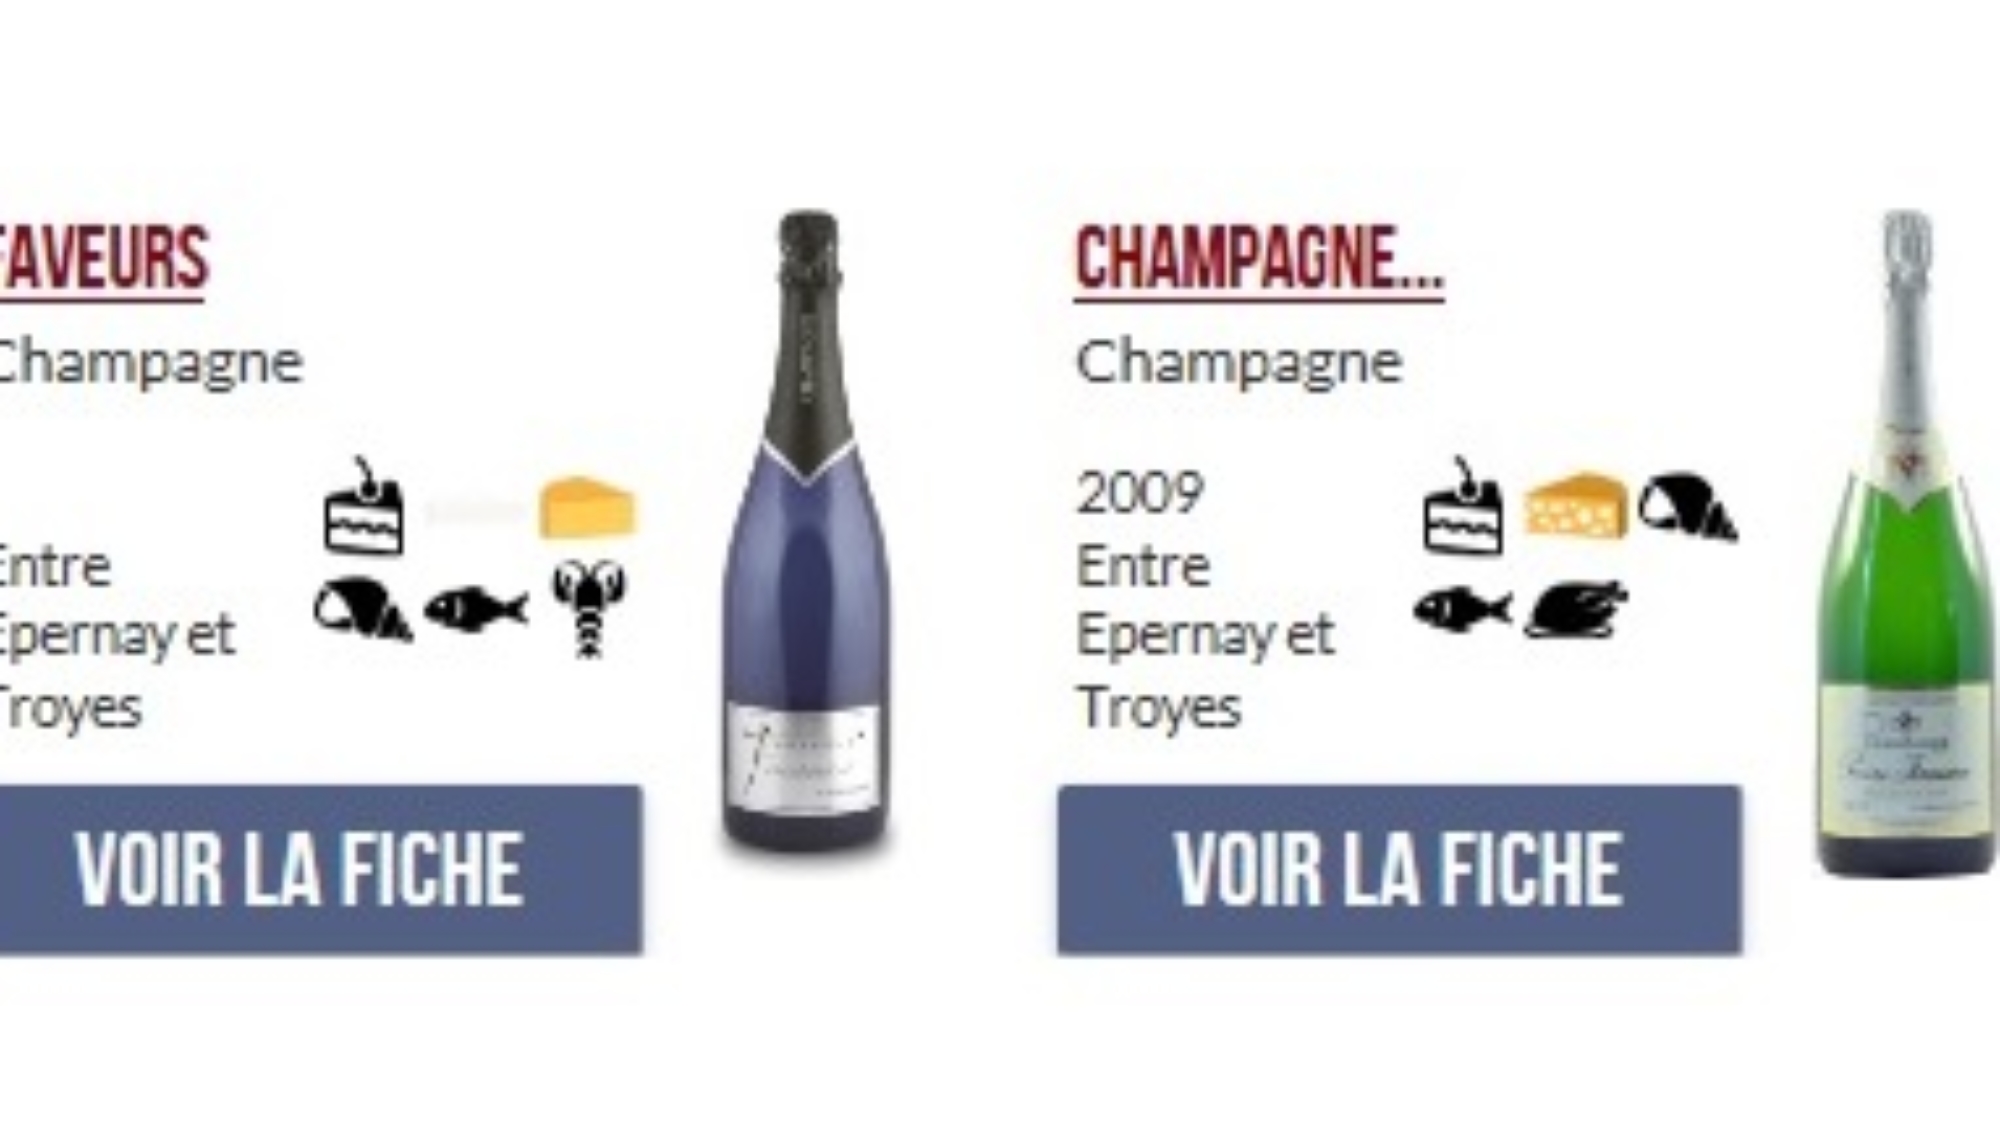 Dégustation de champagne Caroline Donagemma le 8 Decembre chez myCowork Montorgueil